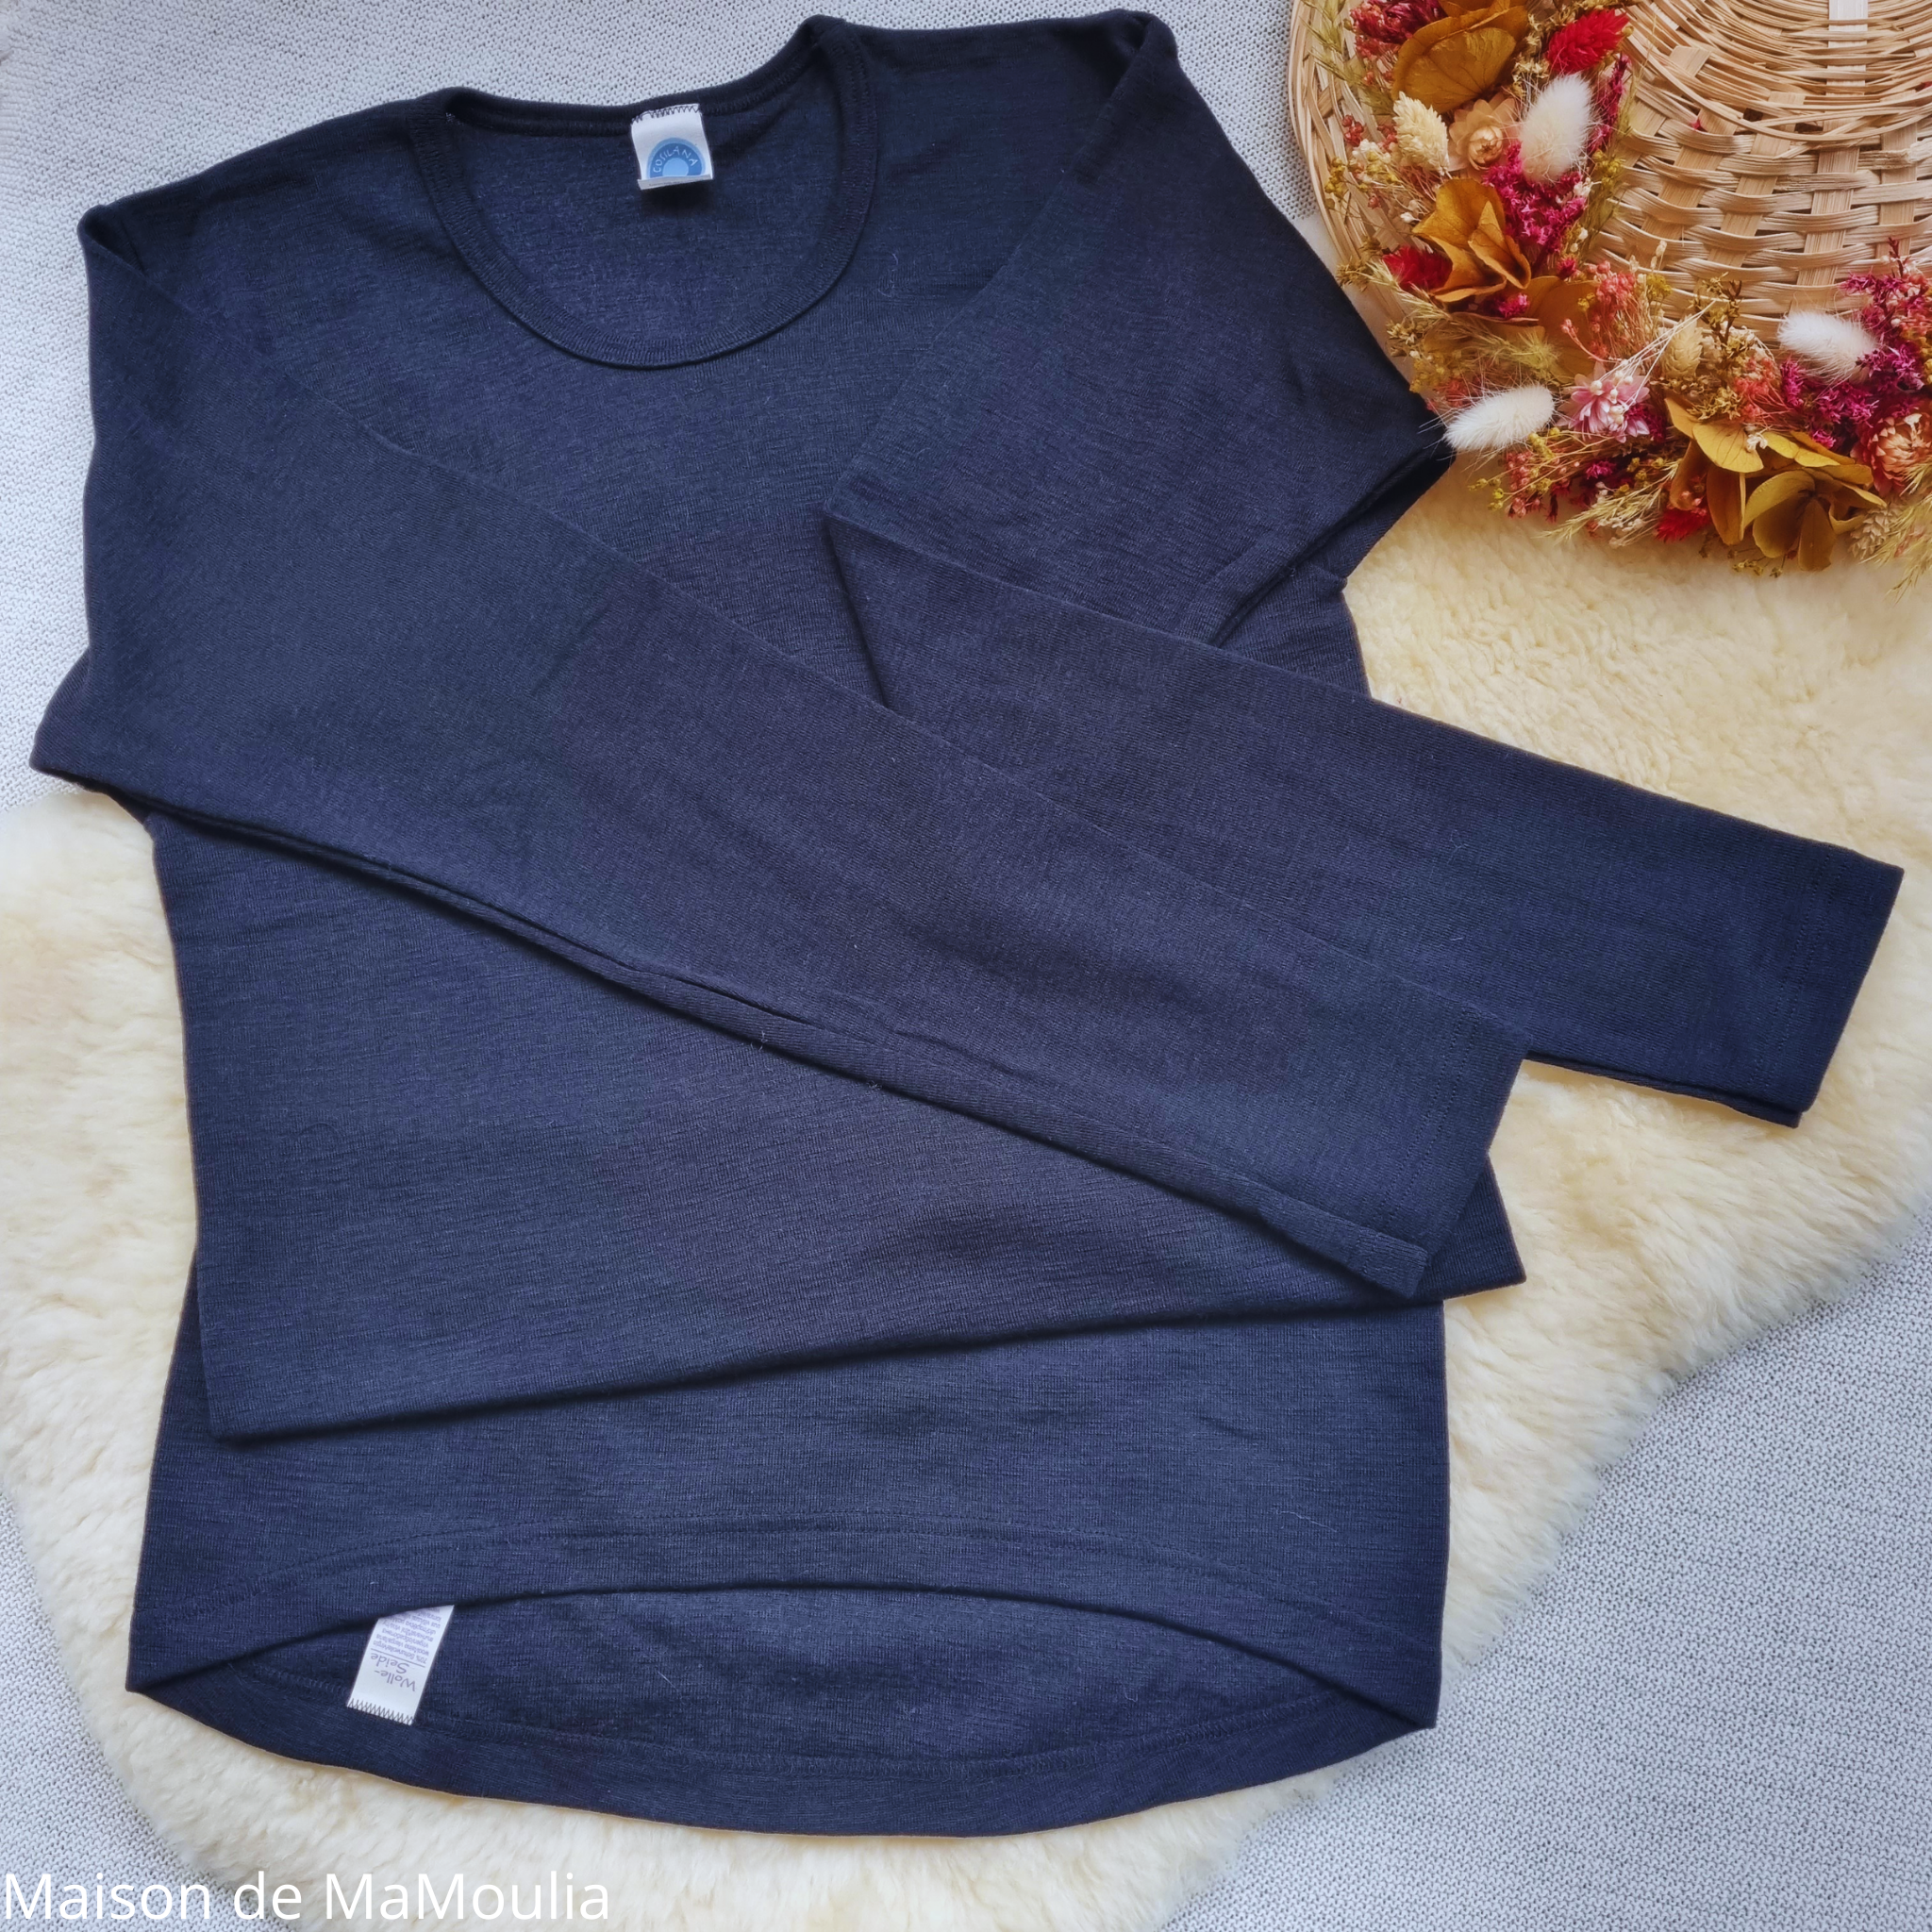 COSILANA - T-shirt manches longues - Laine/soie, Noir - Homme